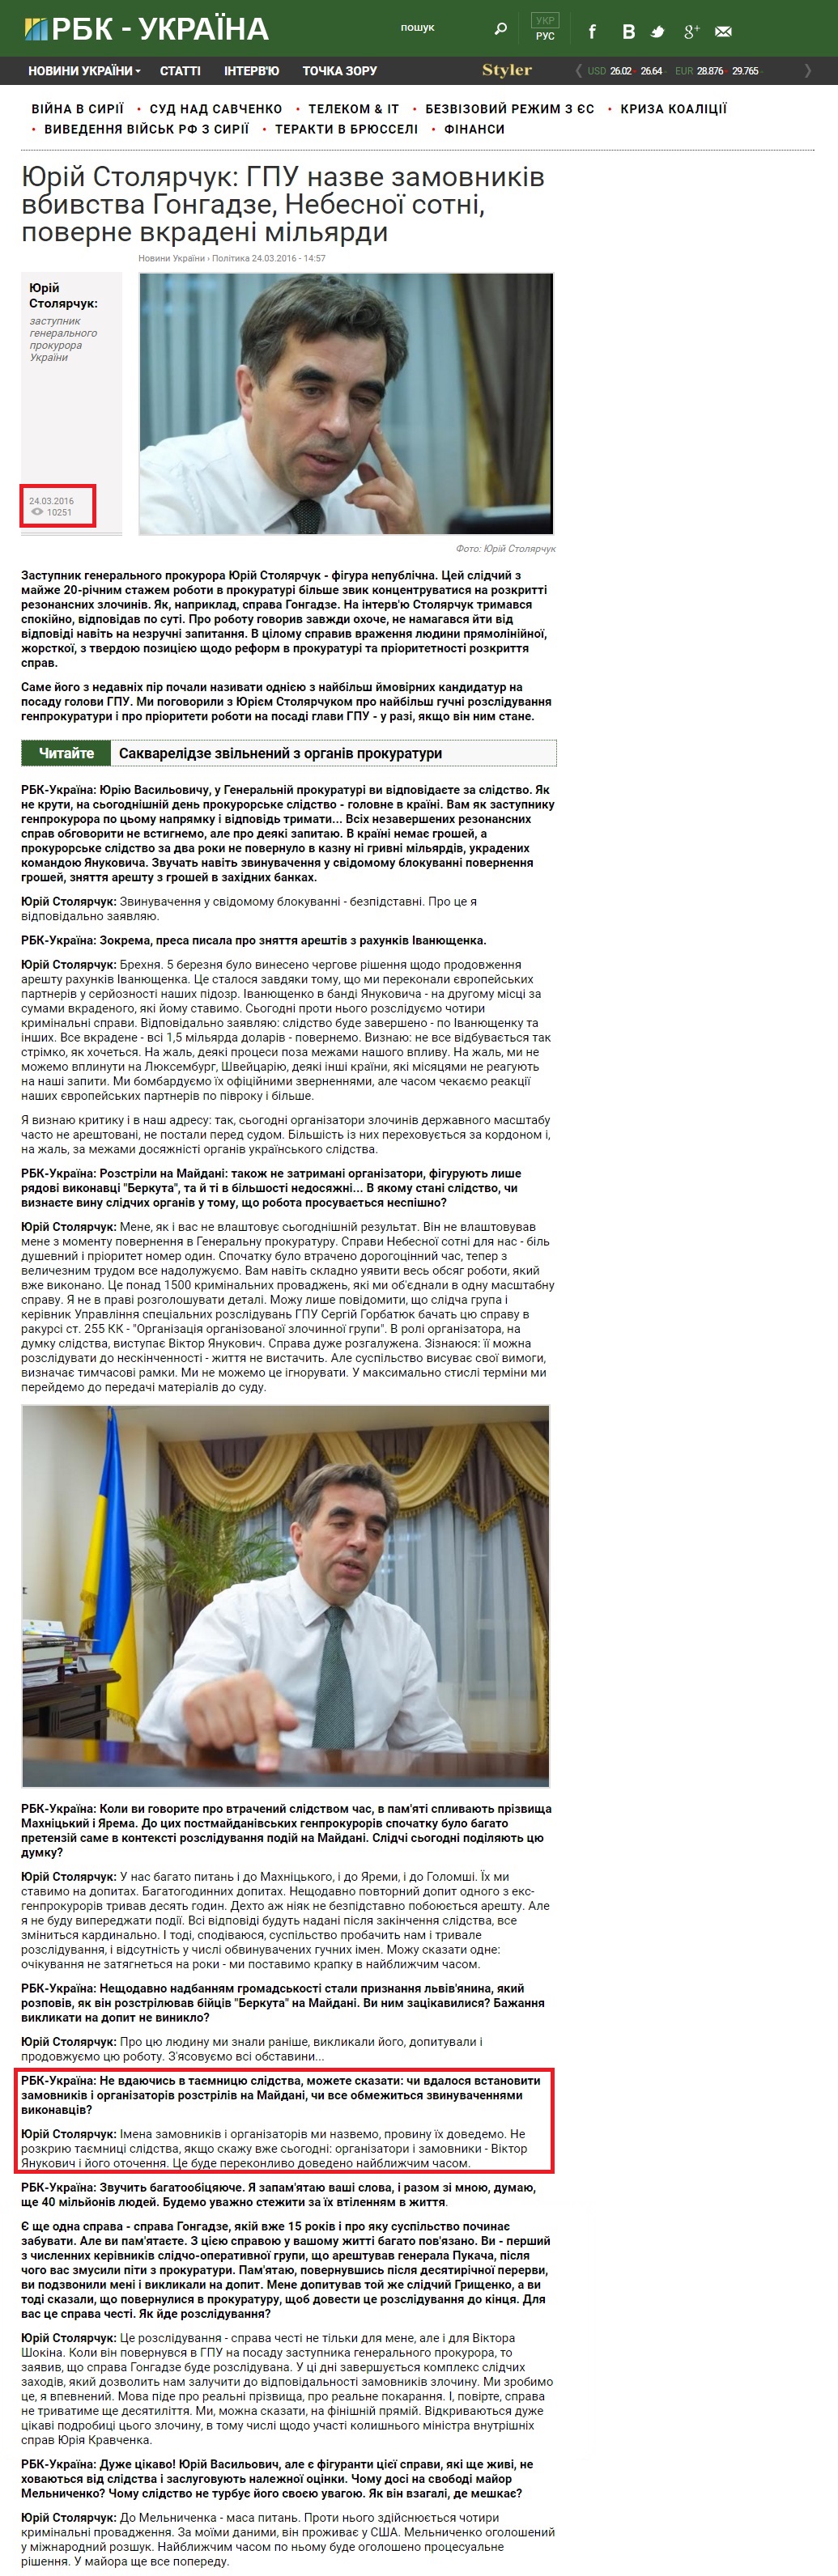 https://www.rbc.ua/ukr/interview/yuriy-stolyarchuk-gpu-nazovet-zakazchikov-1458824239.html